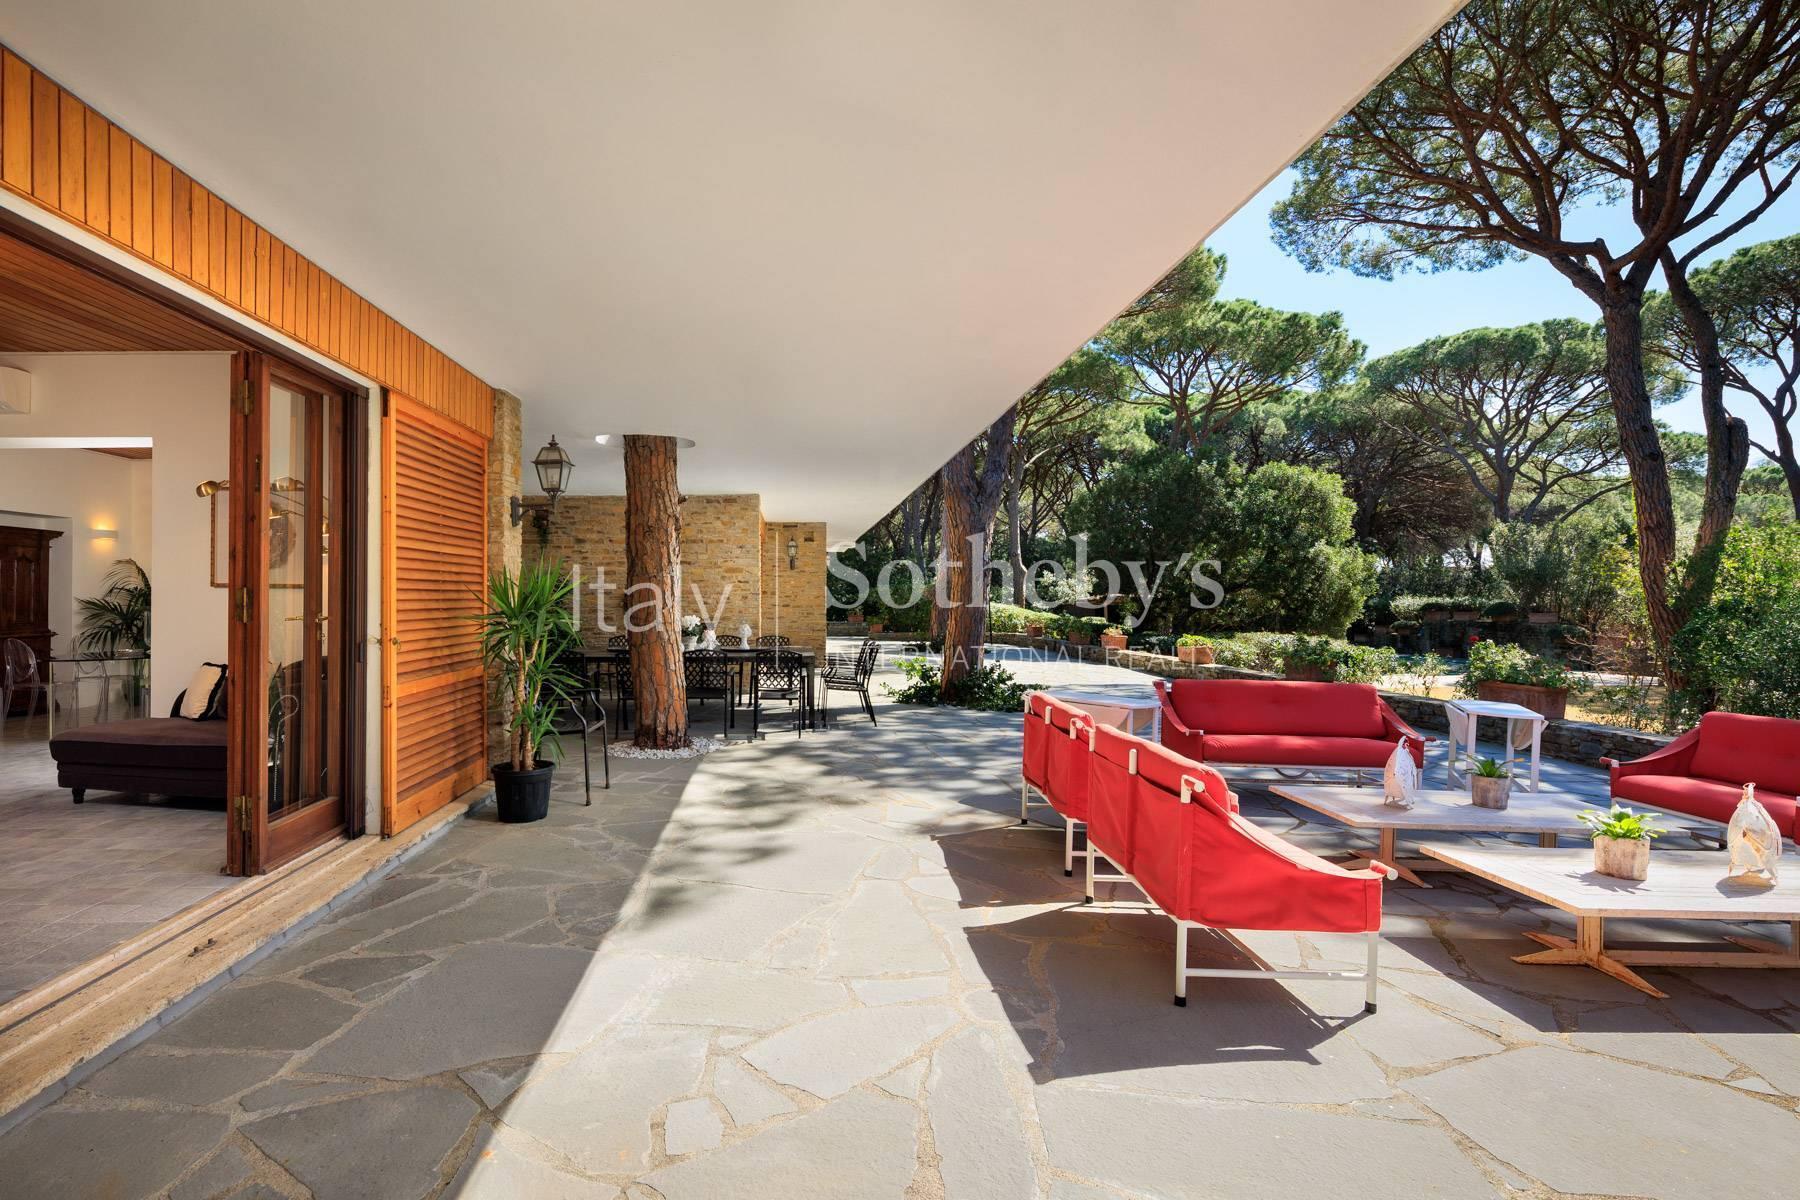 Villa immersa nella splendida pineta di Roccamare con spiaggia privata - 4